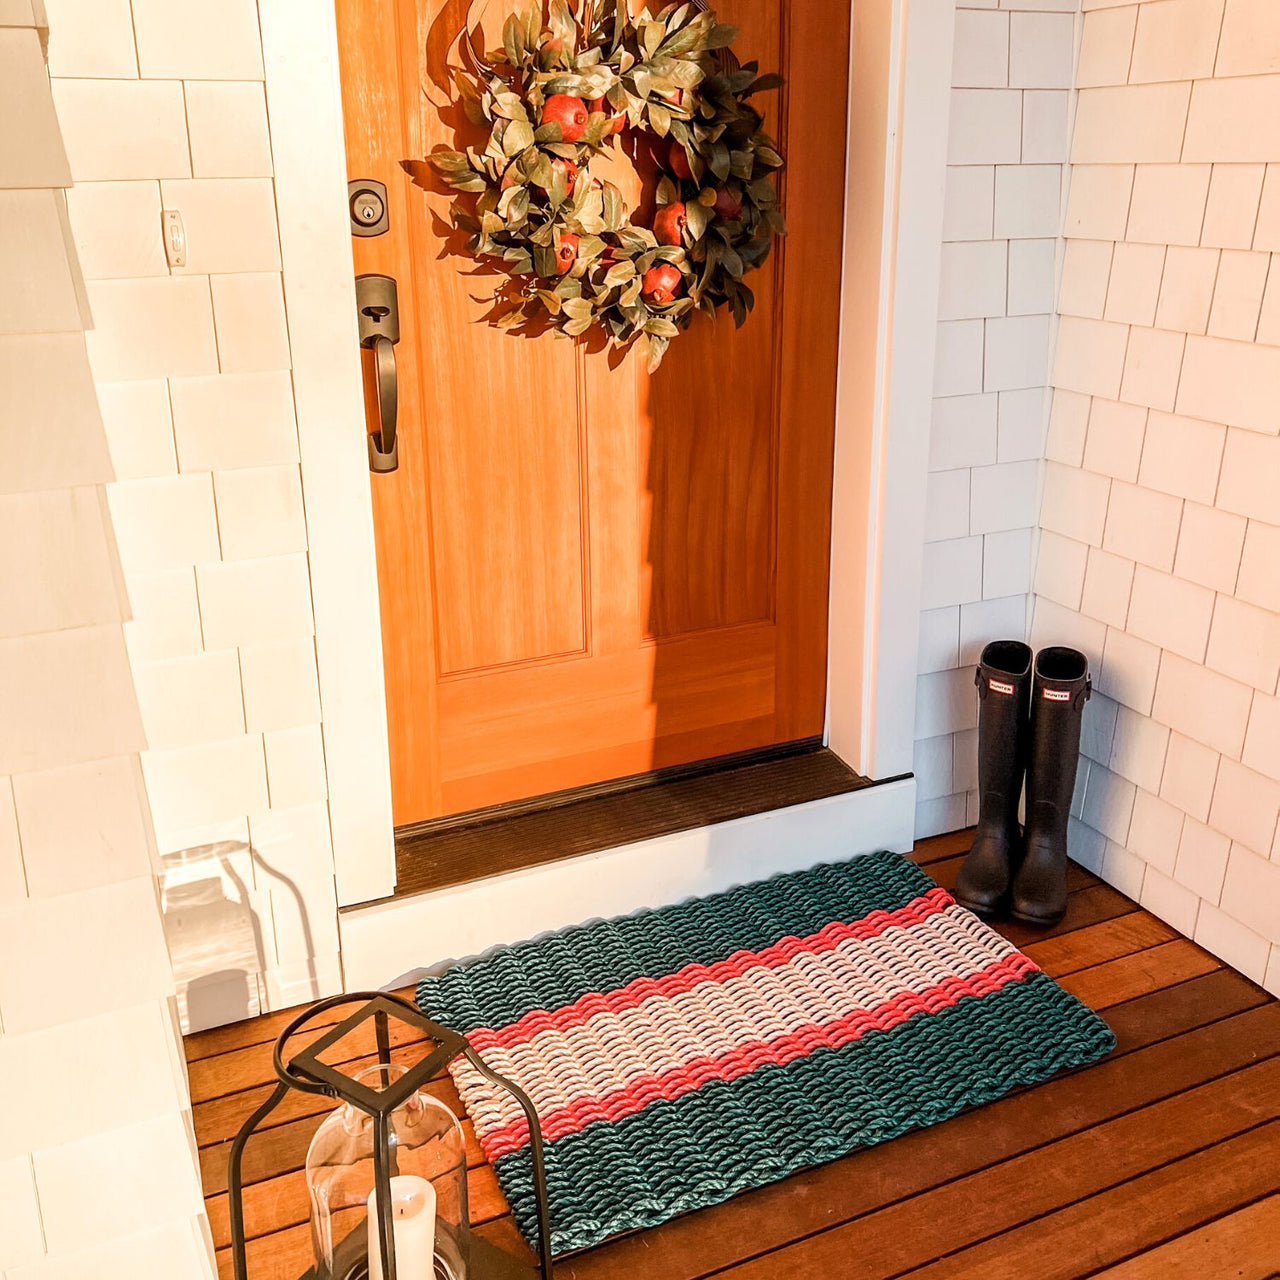 Lobster Rope Doormats, Outdoor Door Mats, Wicked Good Door Mats Made in Maine, Christmas Green & Red, With Wreath Door Design